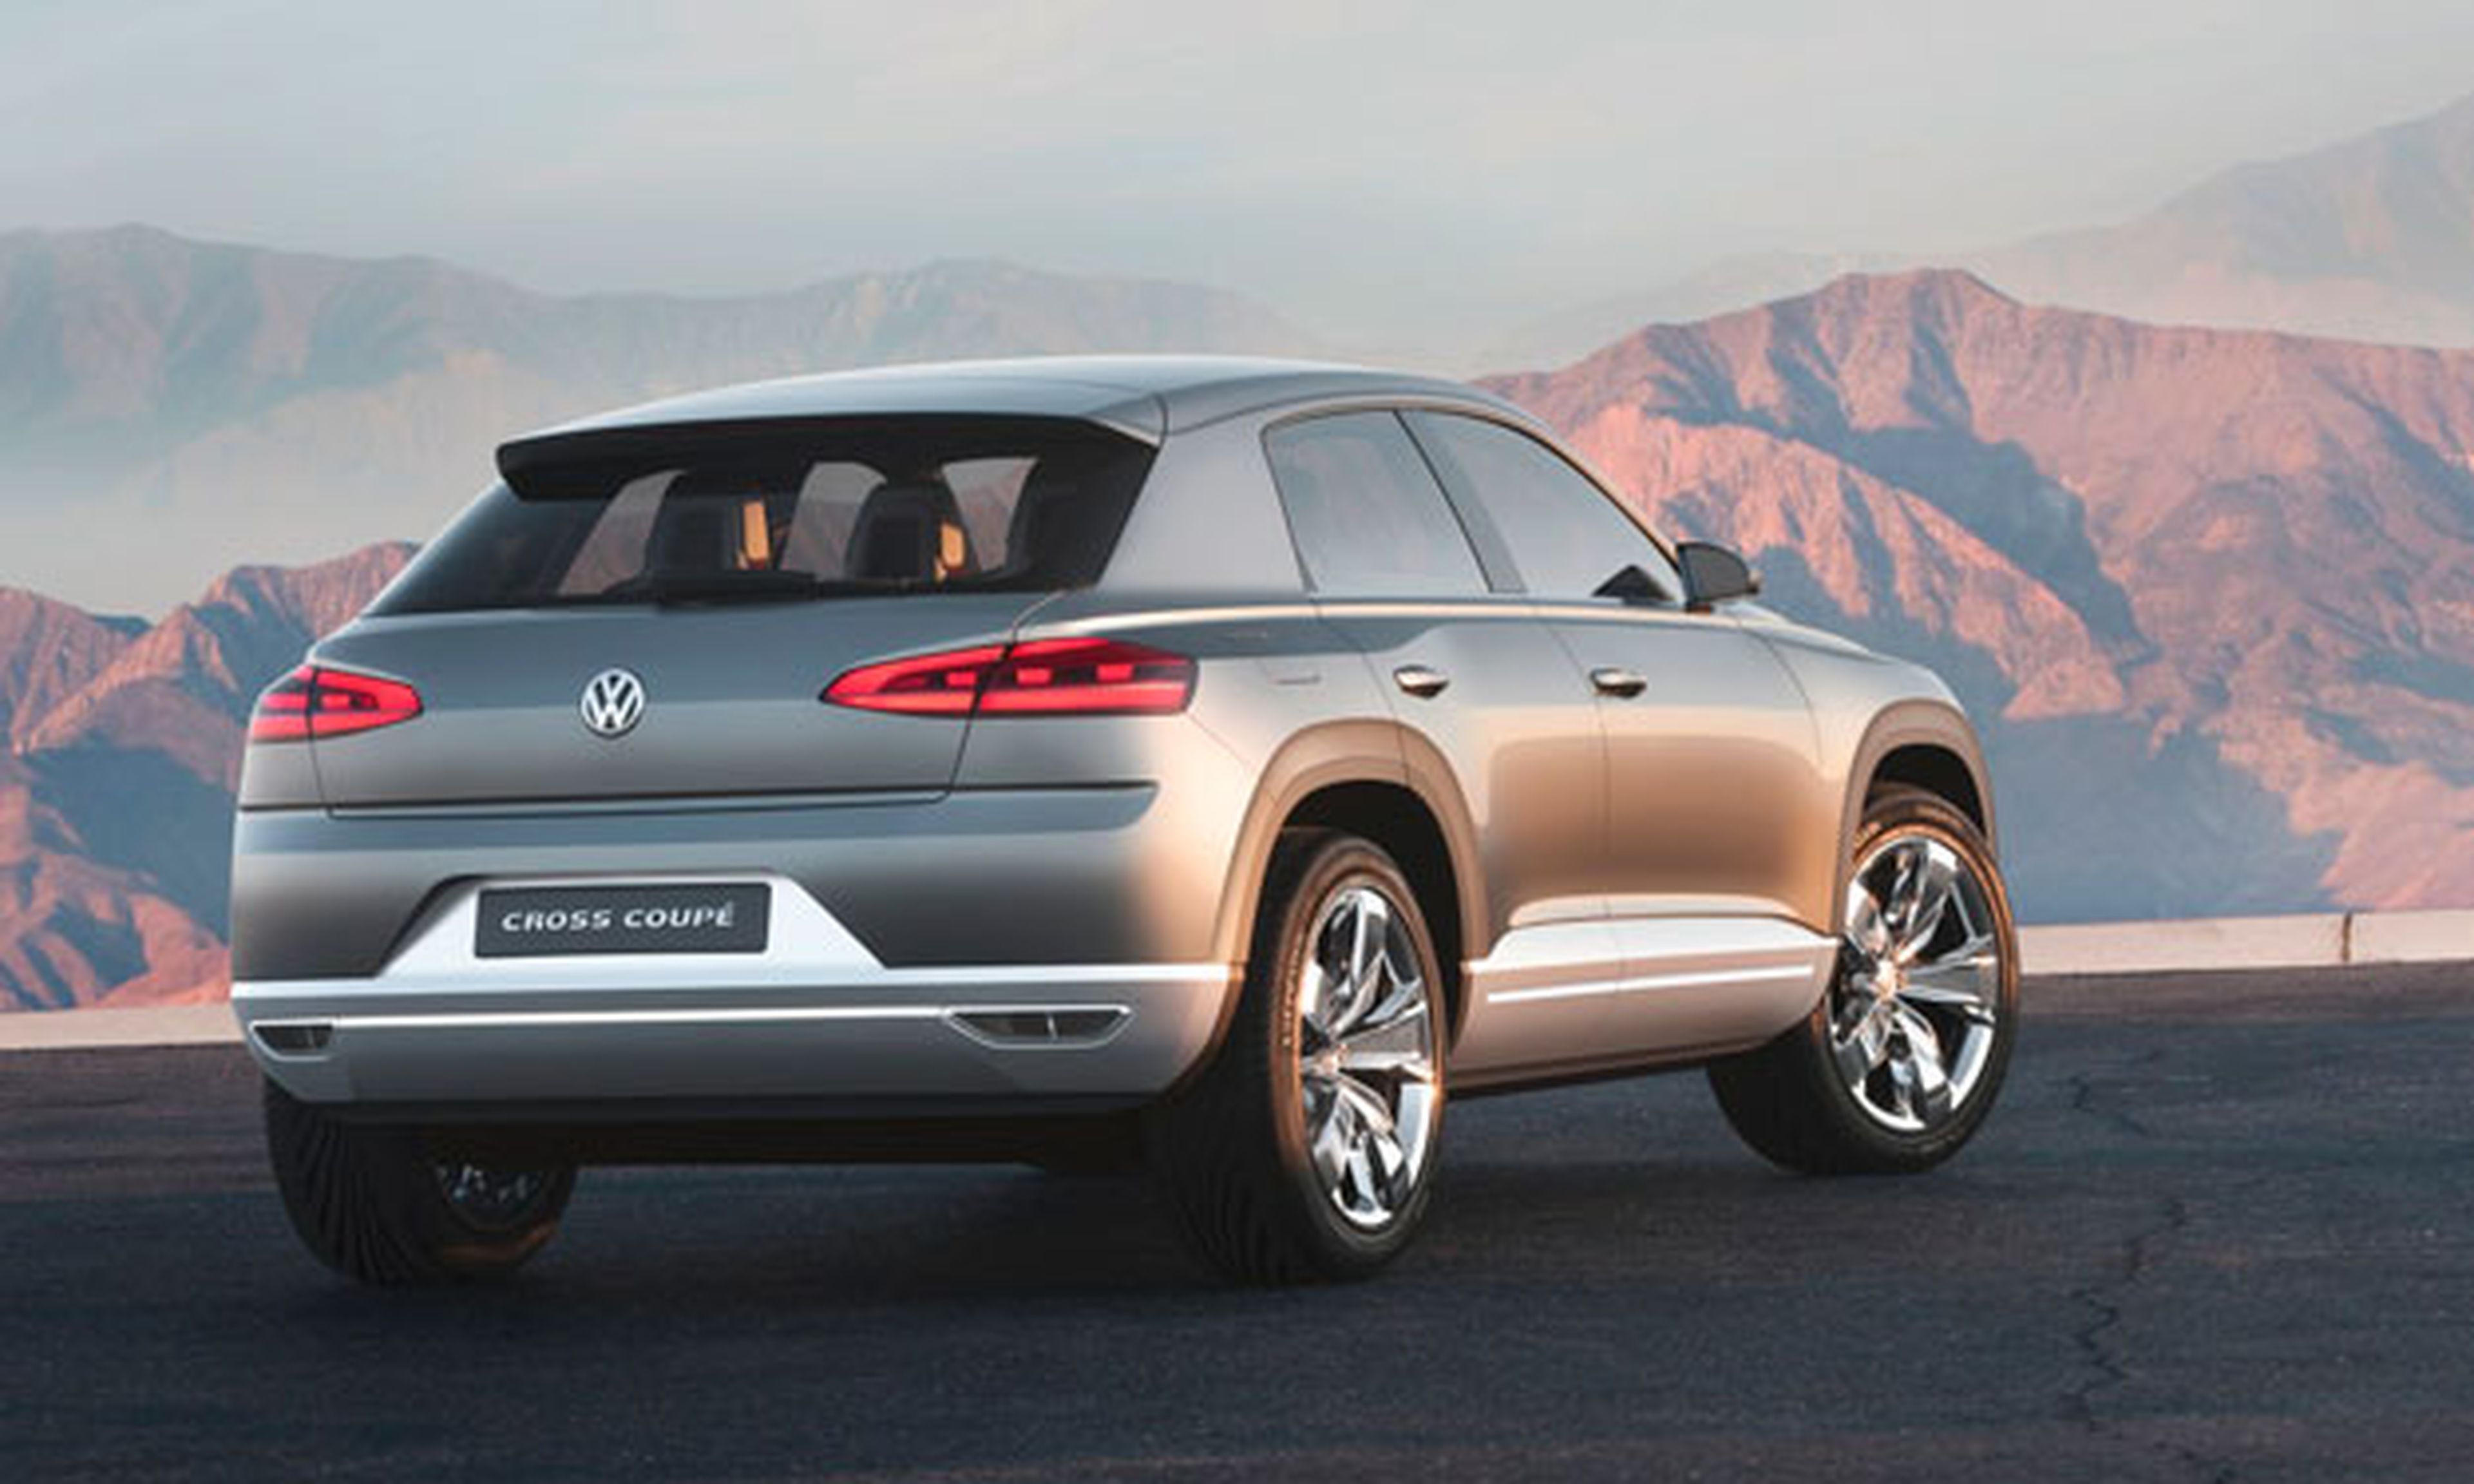 Volkswagen va a lanzar dos nuevos SUV: uno basado en el Polo y otro de siete plazas